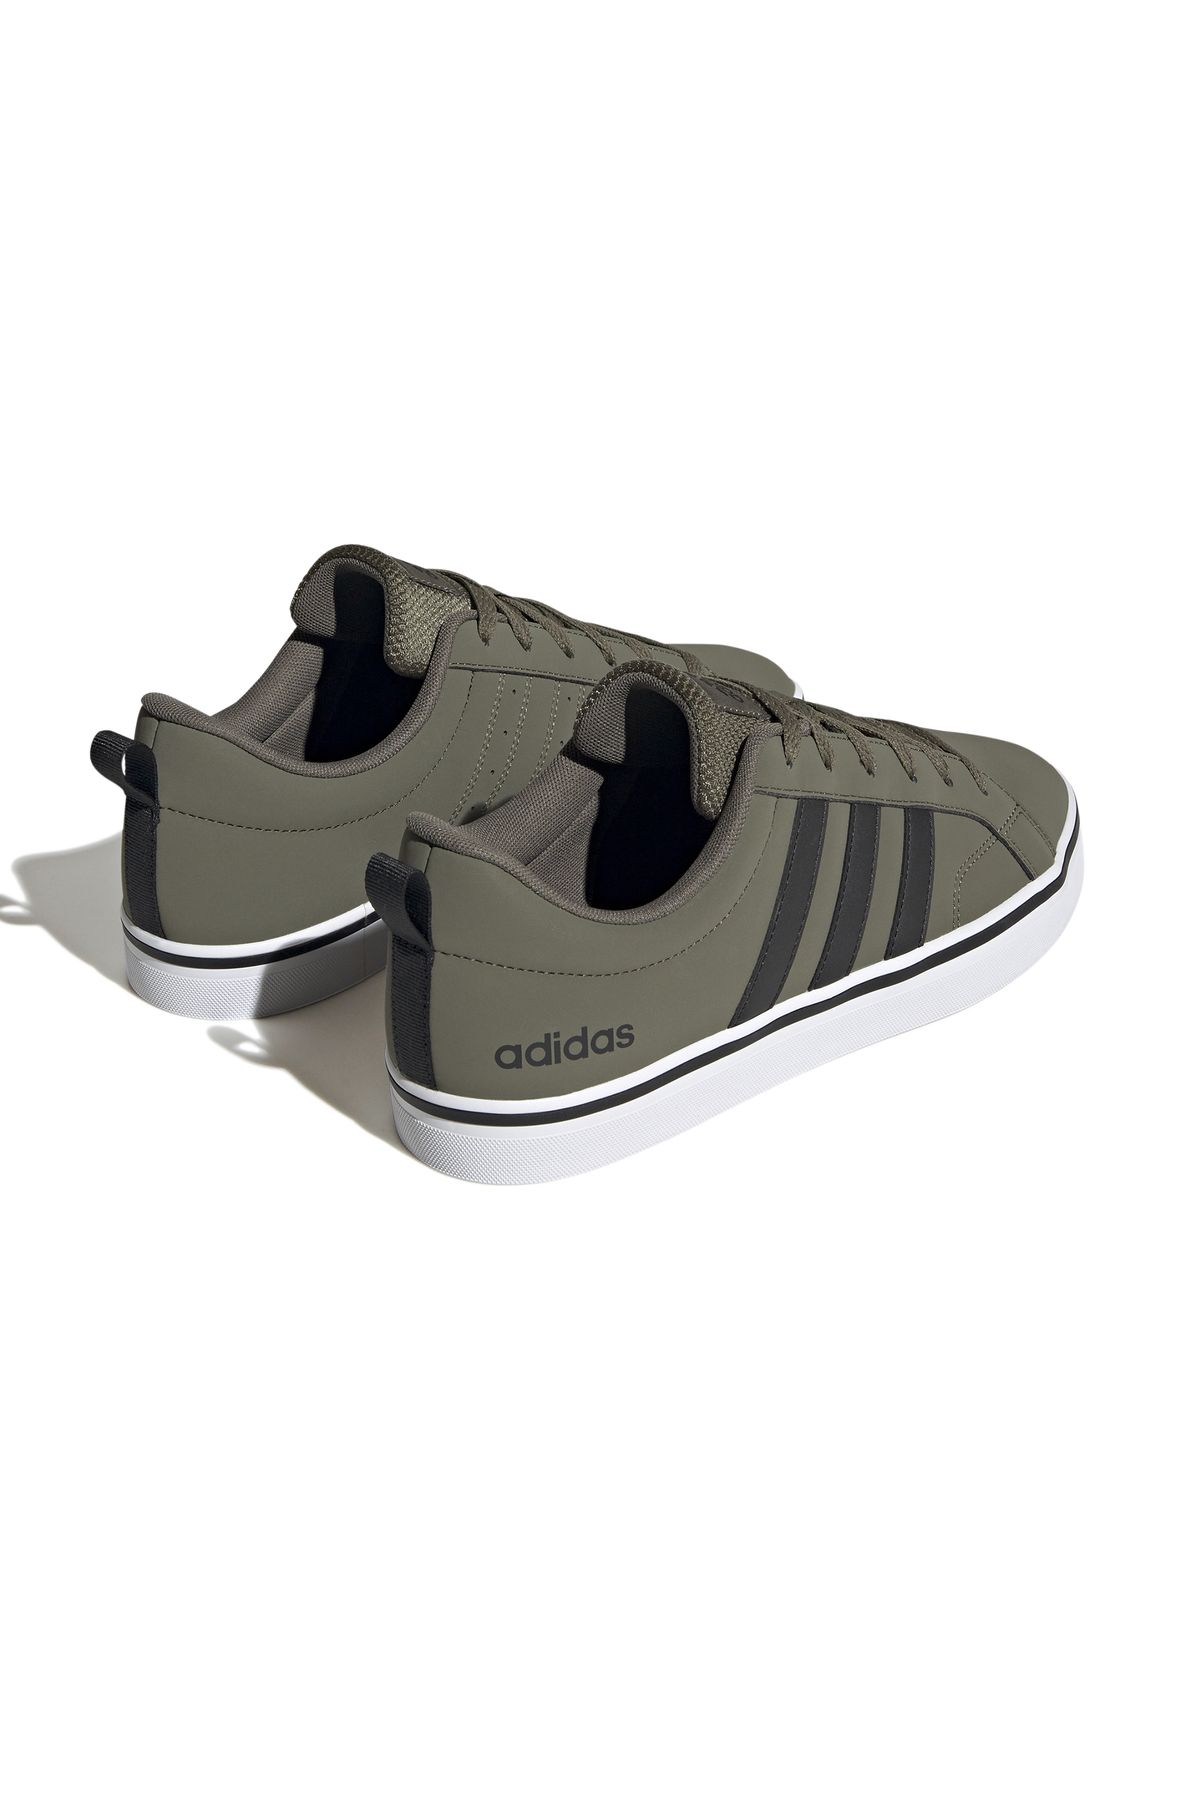 Vs Pace 2.0 Erkek Günlük Ayakkabı Spor Sneaker